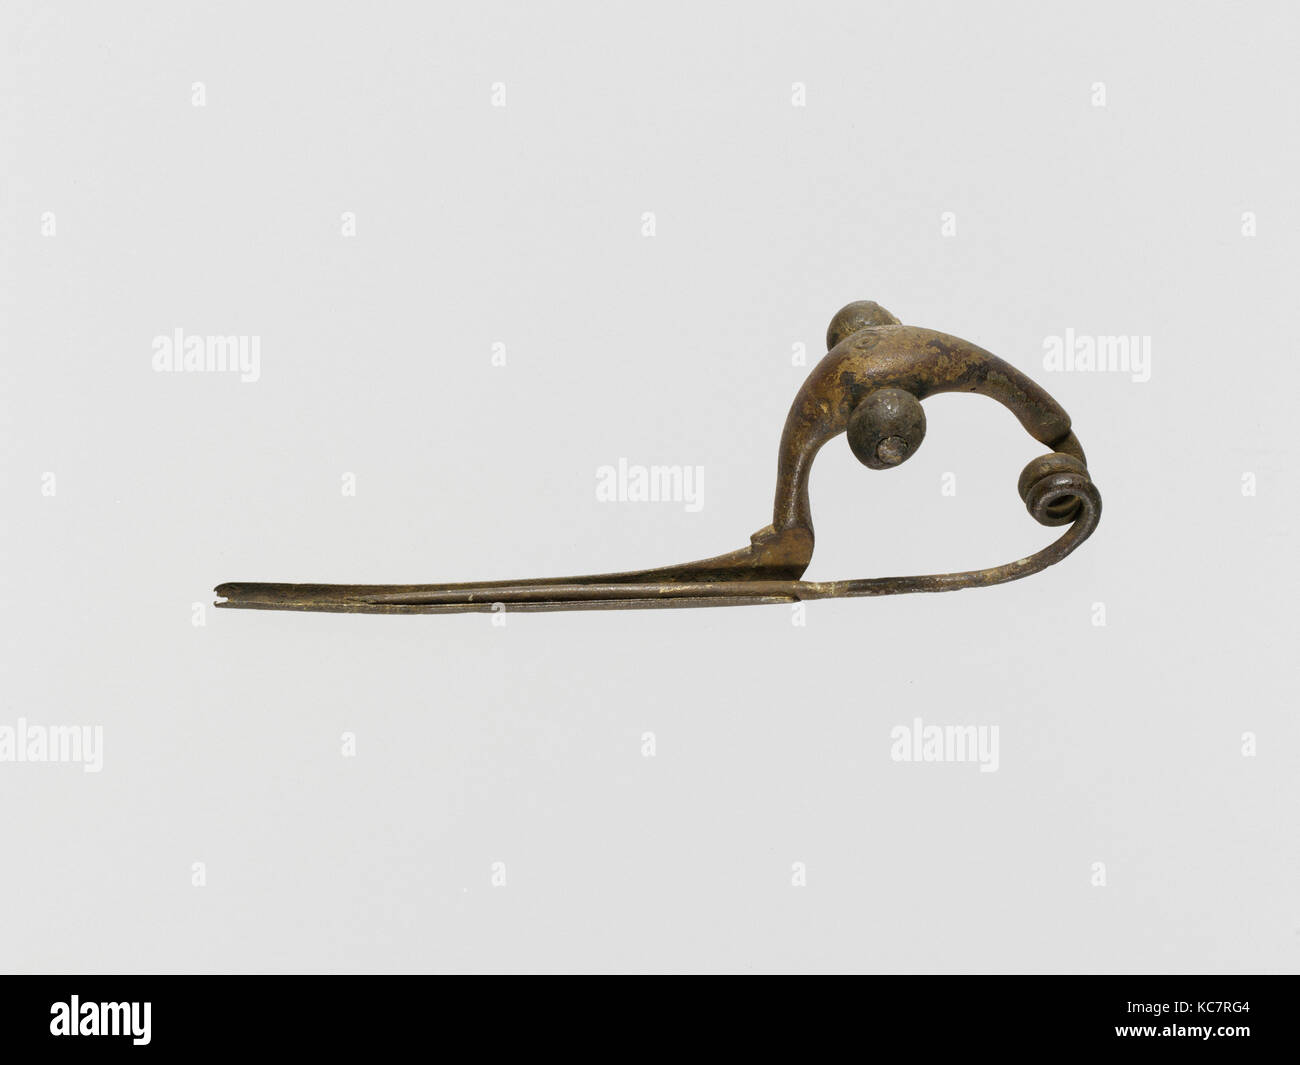 Peroné arco de bronce fotografías e imágenes alta resolución - Alamy